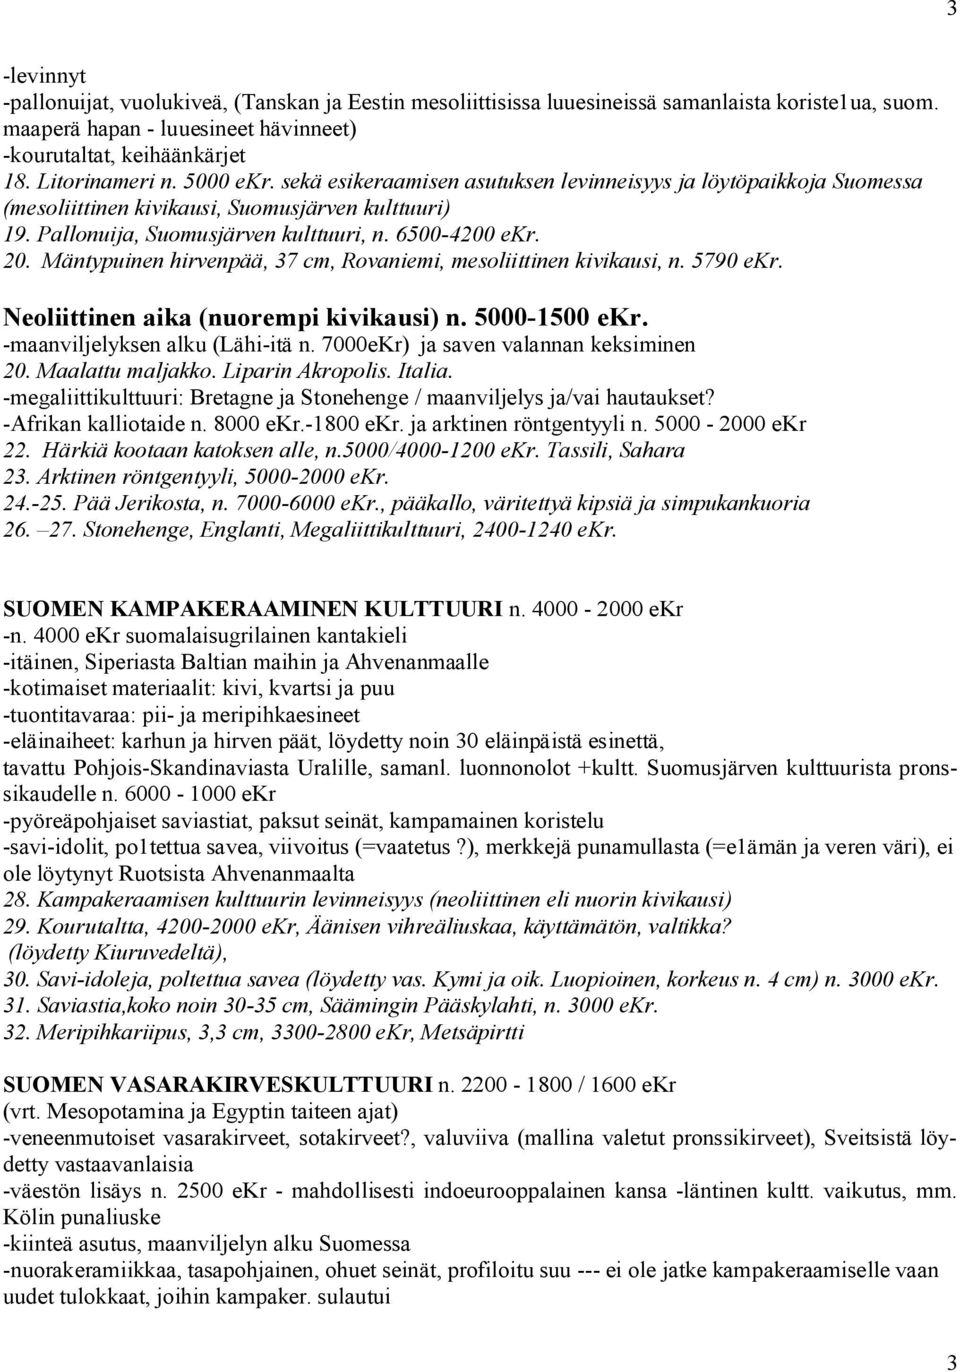 Mäntypuinen hirvenpää, 37 cm, Rovaniemi, mesoliittinen kivikausi, n. 5790 ekr. Neoliittinen aika (nuorempi kivikausi) n. 5000 1500 ekr. maanviljelyksen alku (Lähi itä n.